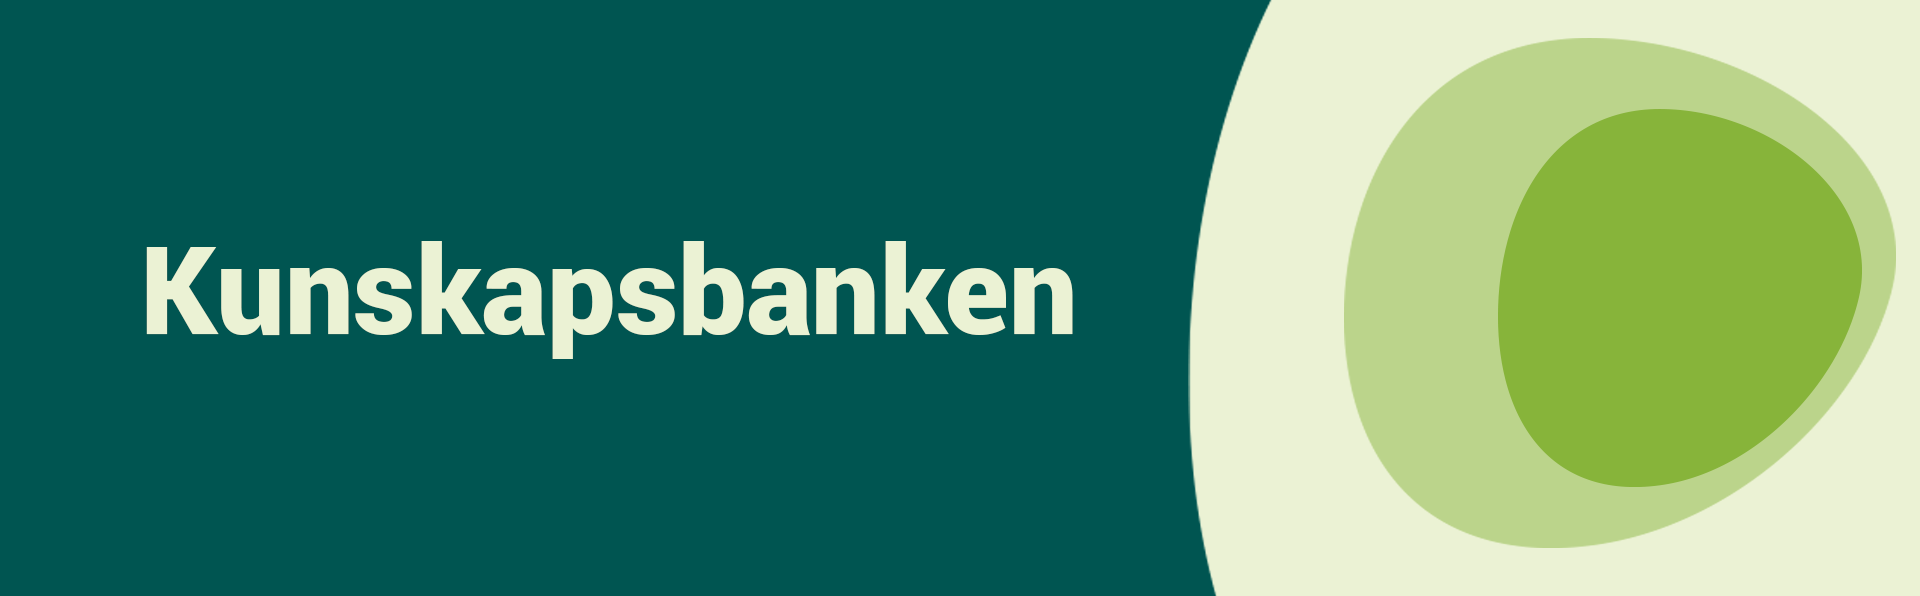 Toppbanner_kunskapsbanken